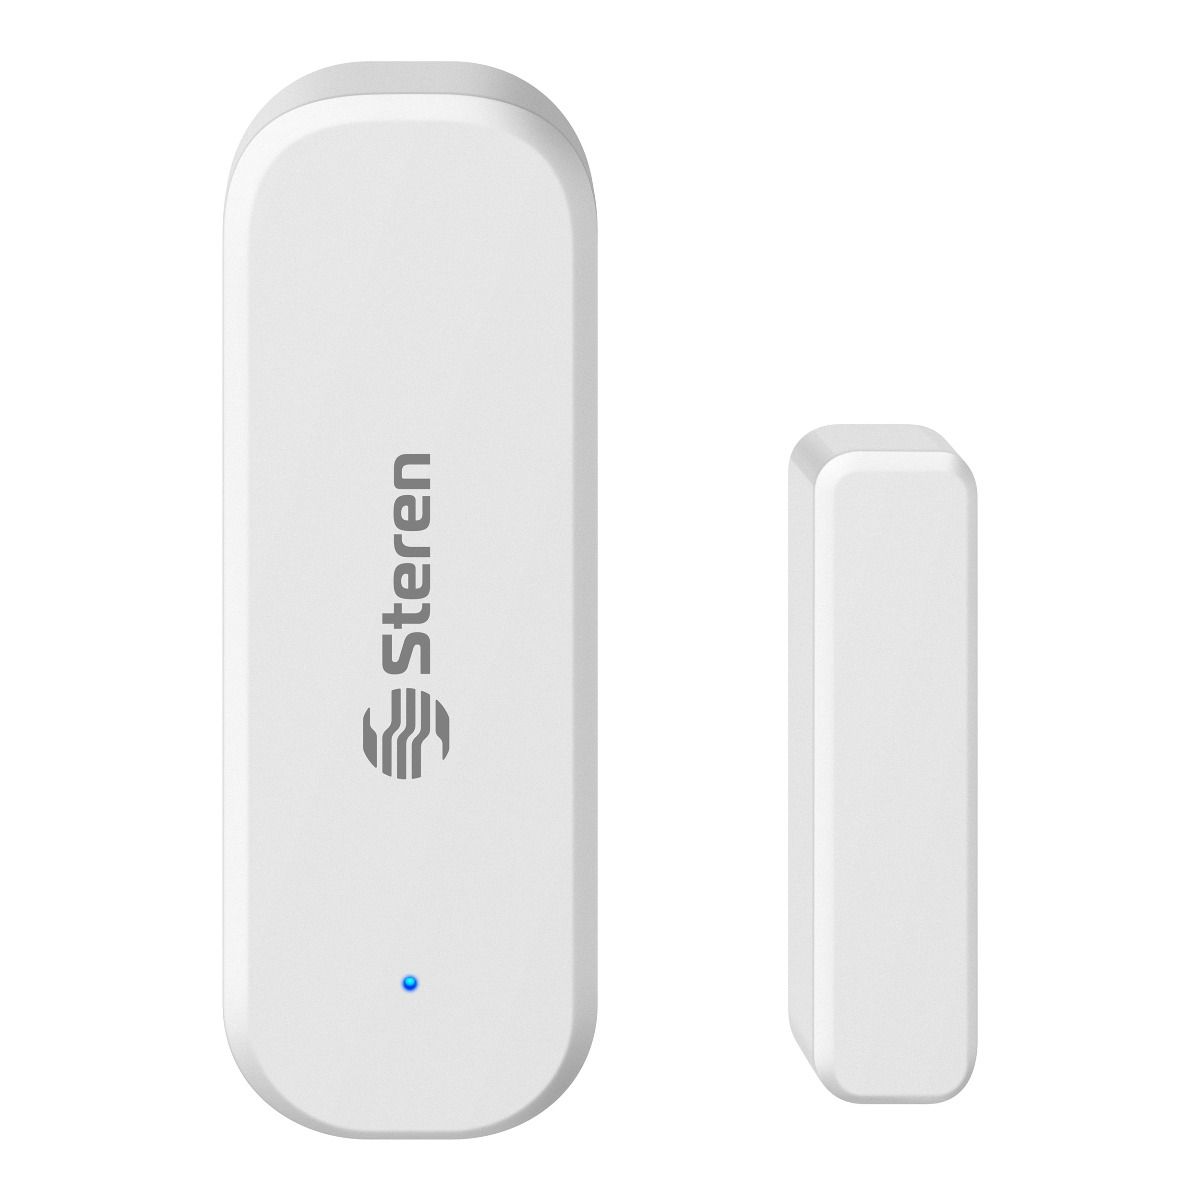 Sensor de alarma WiFi para puertas y ventanas, sonidos de sirena y